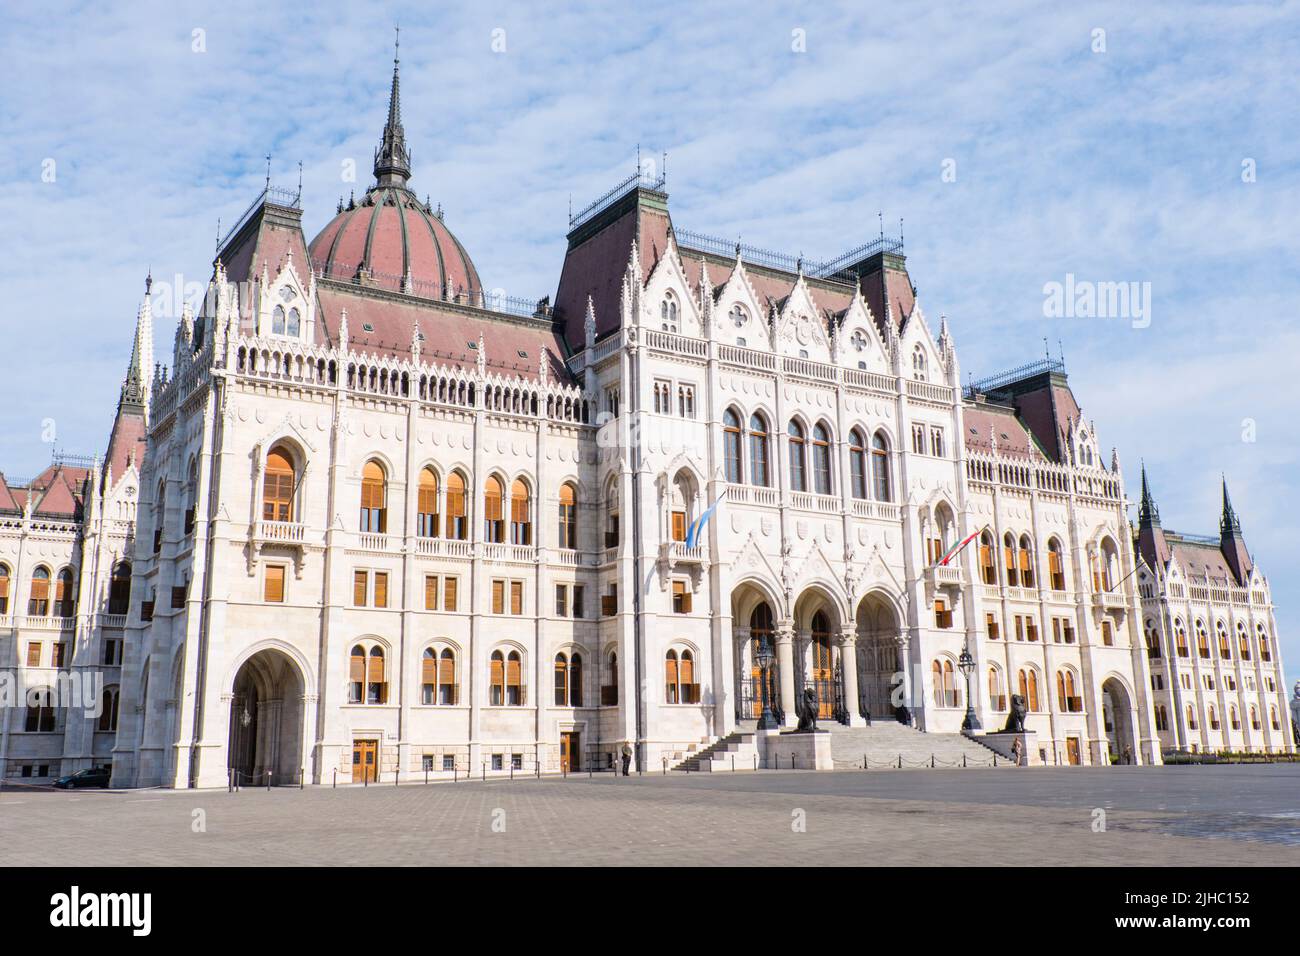 Országház, Parliament building, Kossuth Lajos ter, Budapest, Hungary Stock Photo